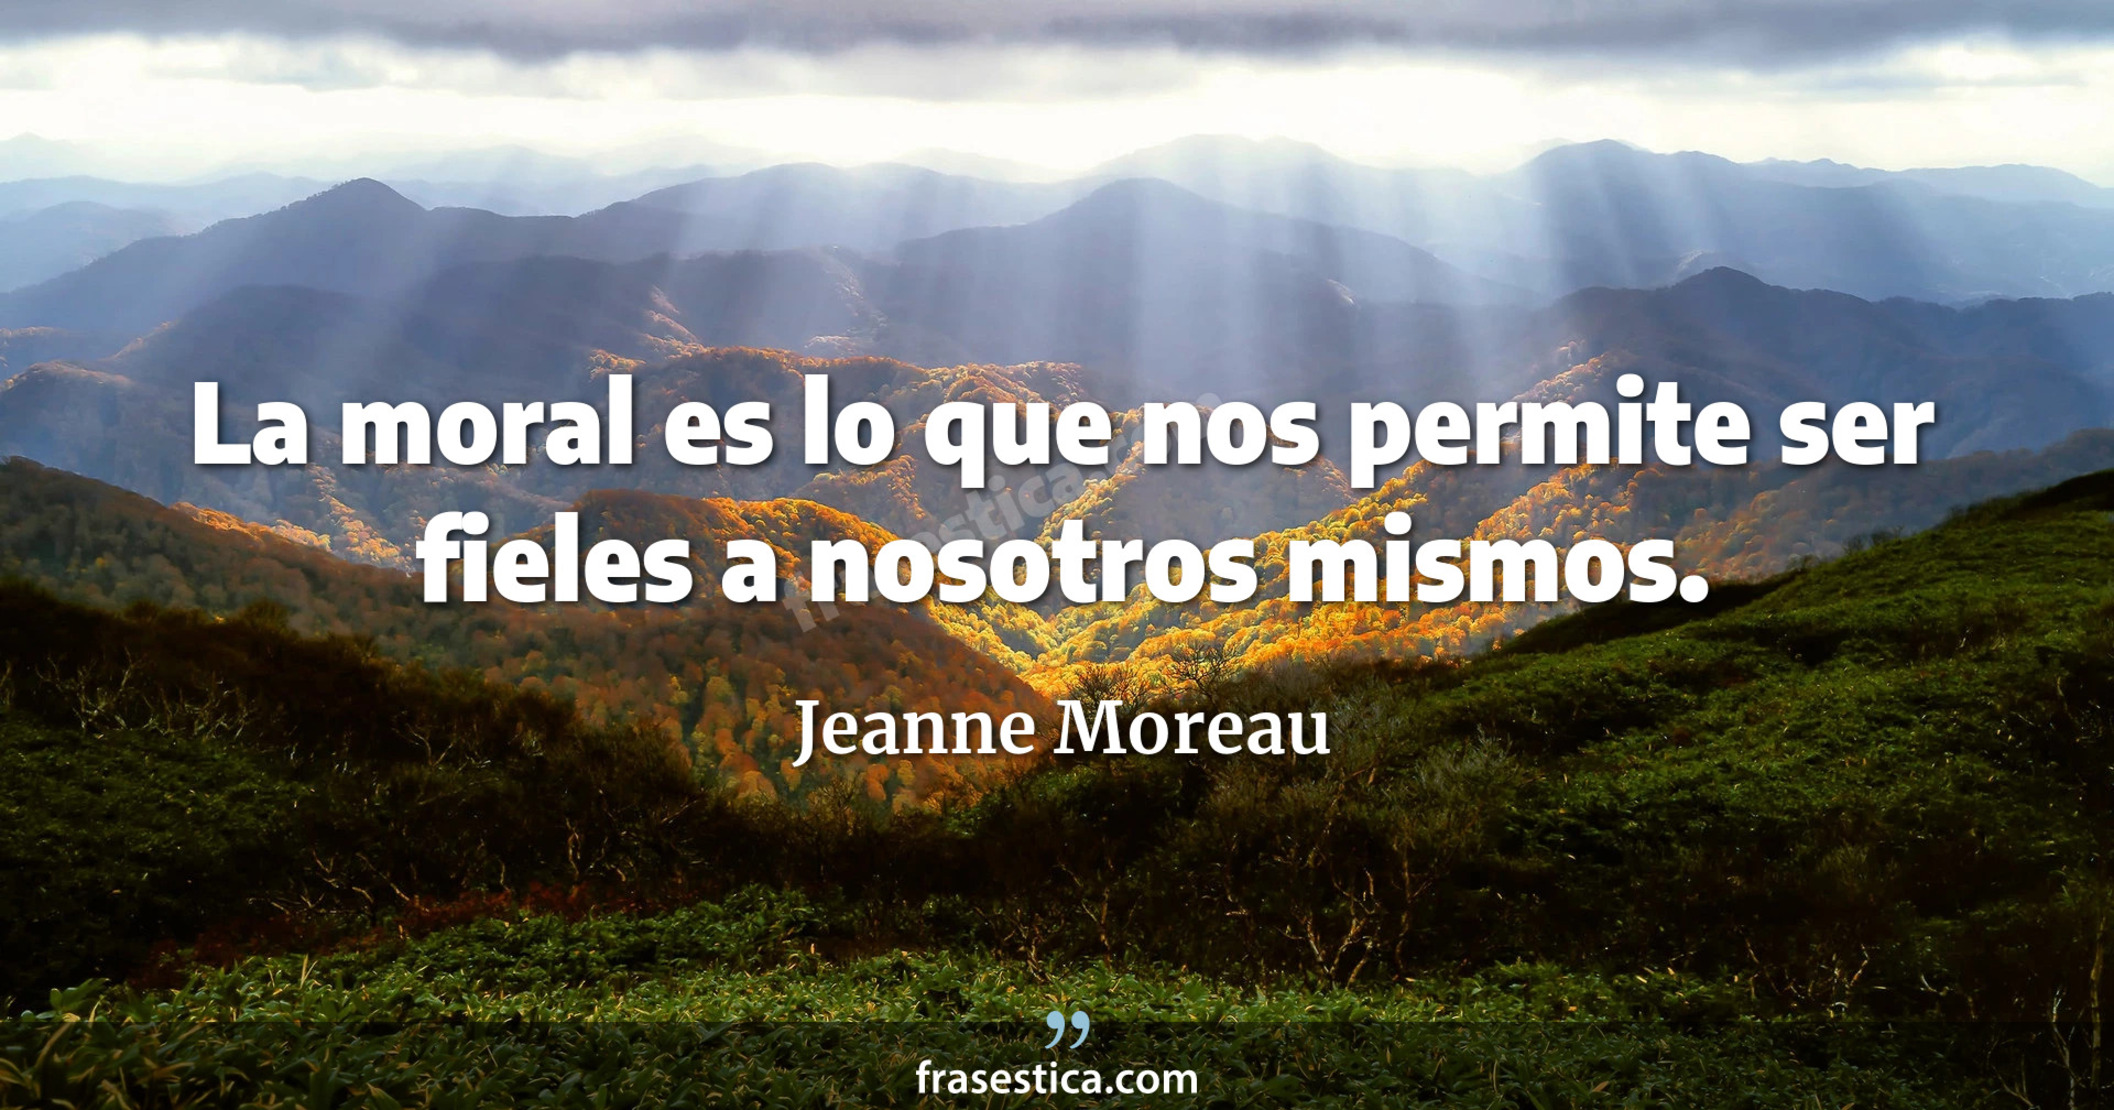 La moral es lo que nos permite ser fieles a nosotros mismos. - Jeanne Moreau